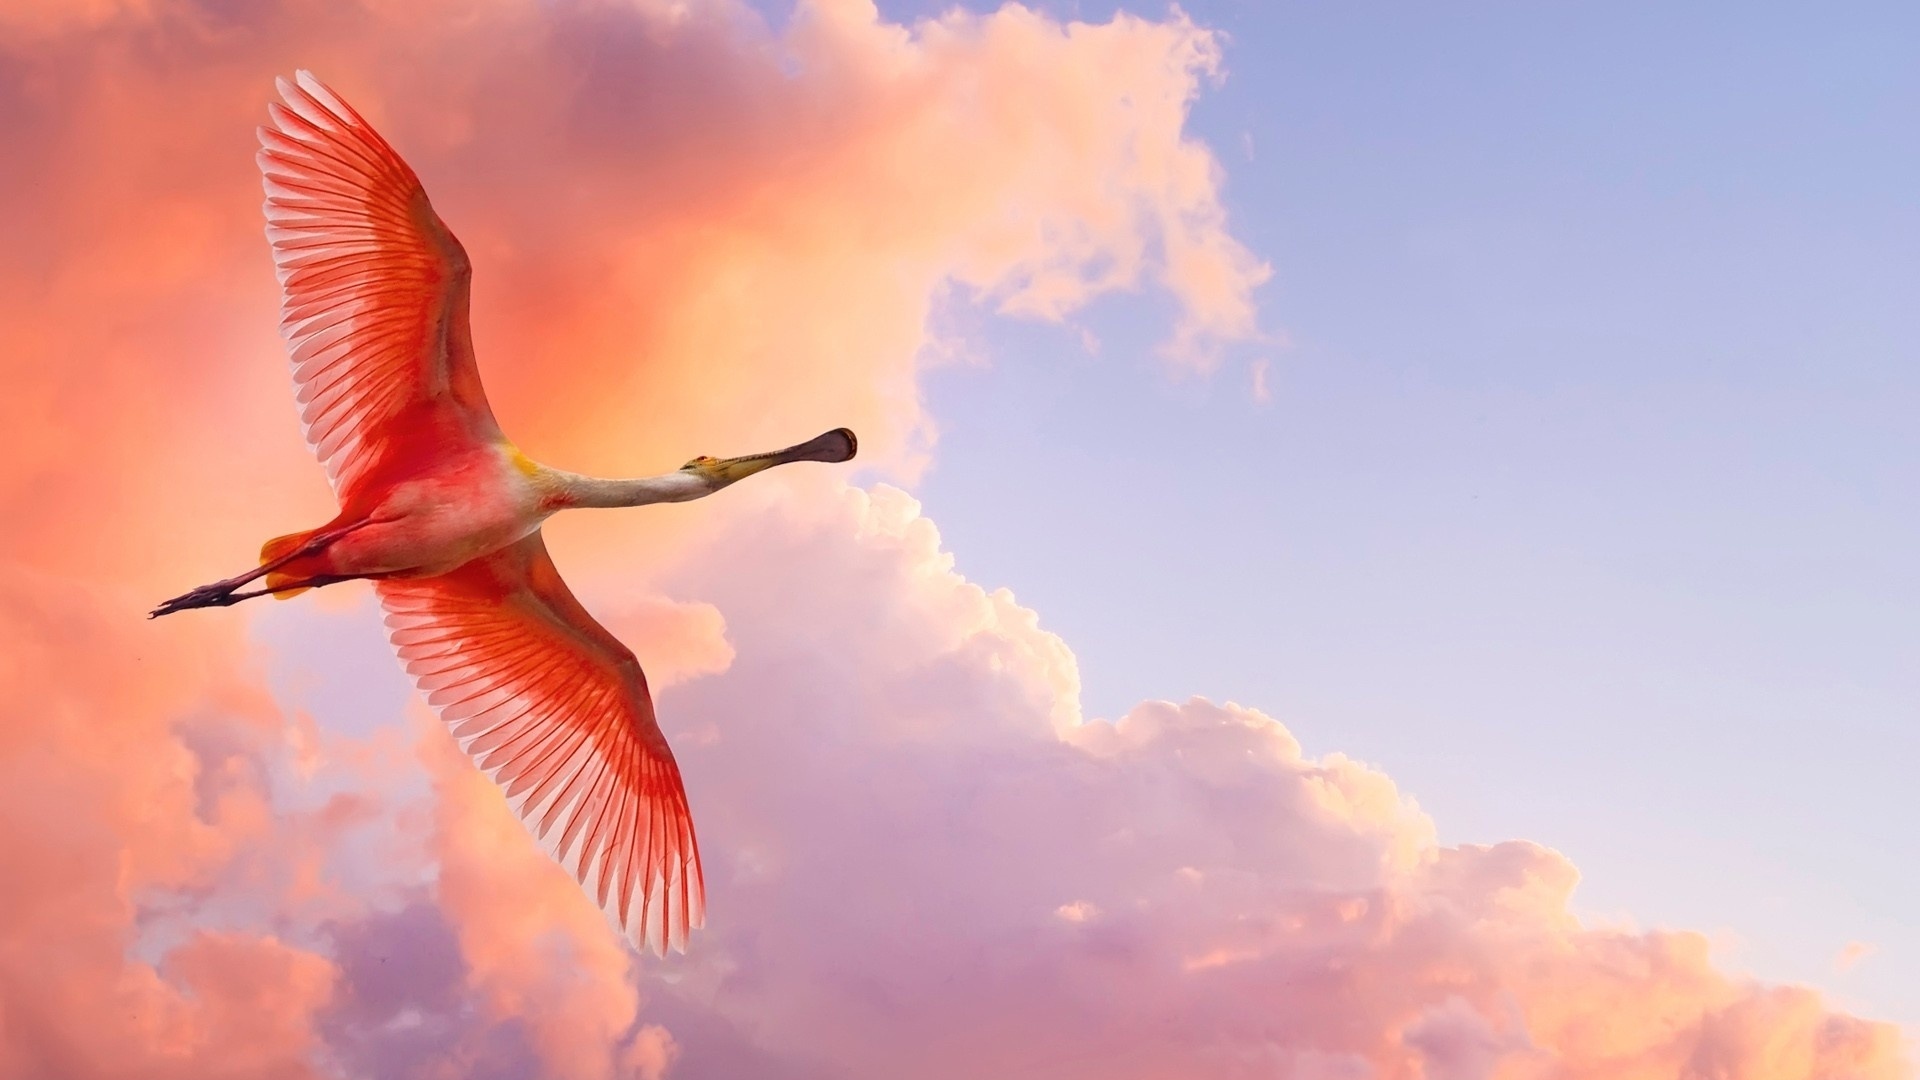 flamingo_flying_birds_sky_clouds_52960_1920x1080